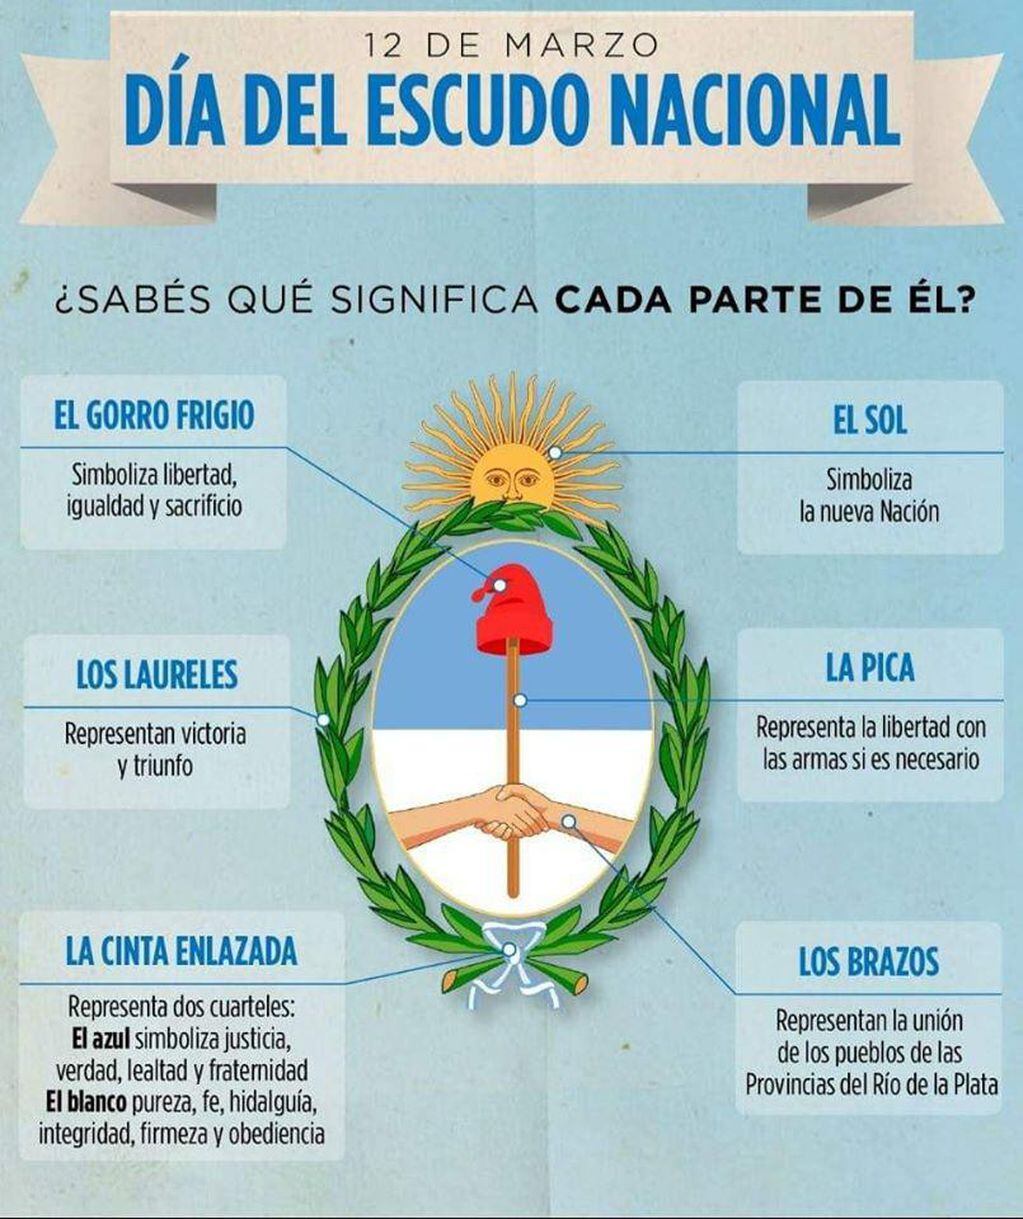 El significado de cada parte del escudo nacional